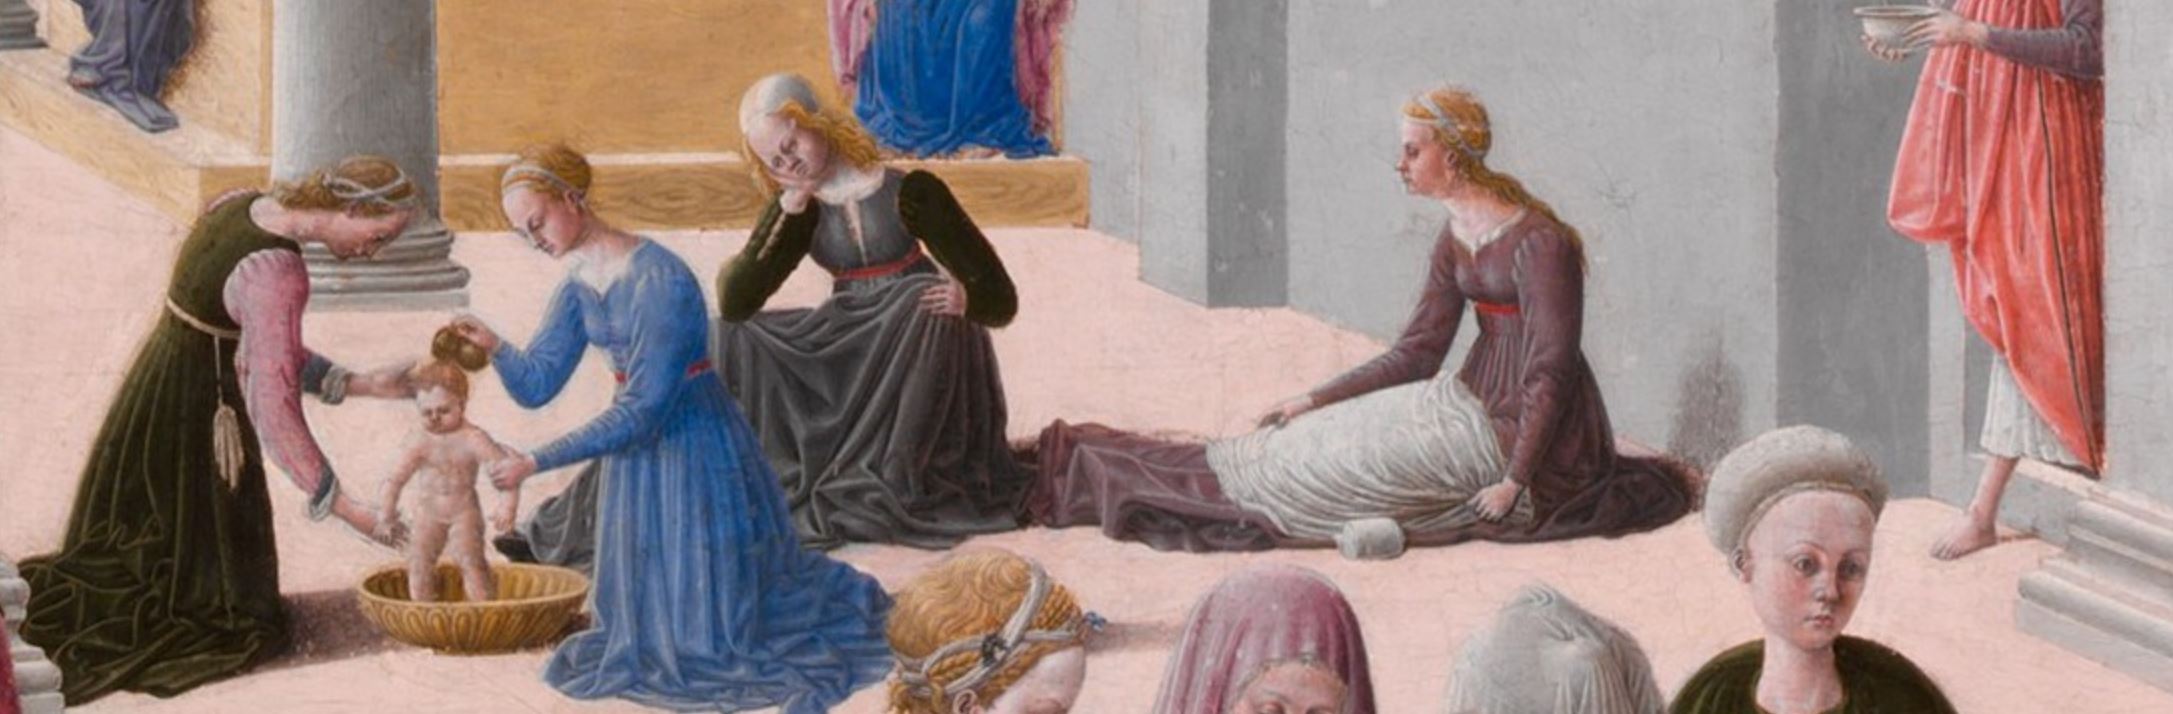 Fra Carnevale 1467 La naissance de la Vierge MET detail Marie